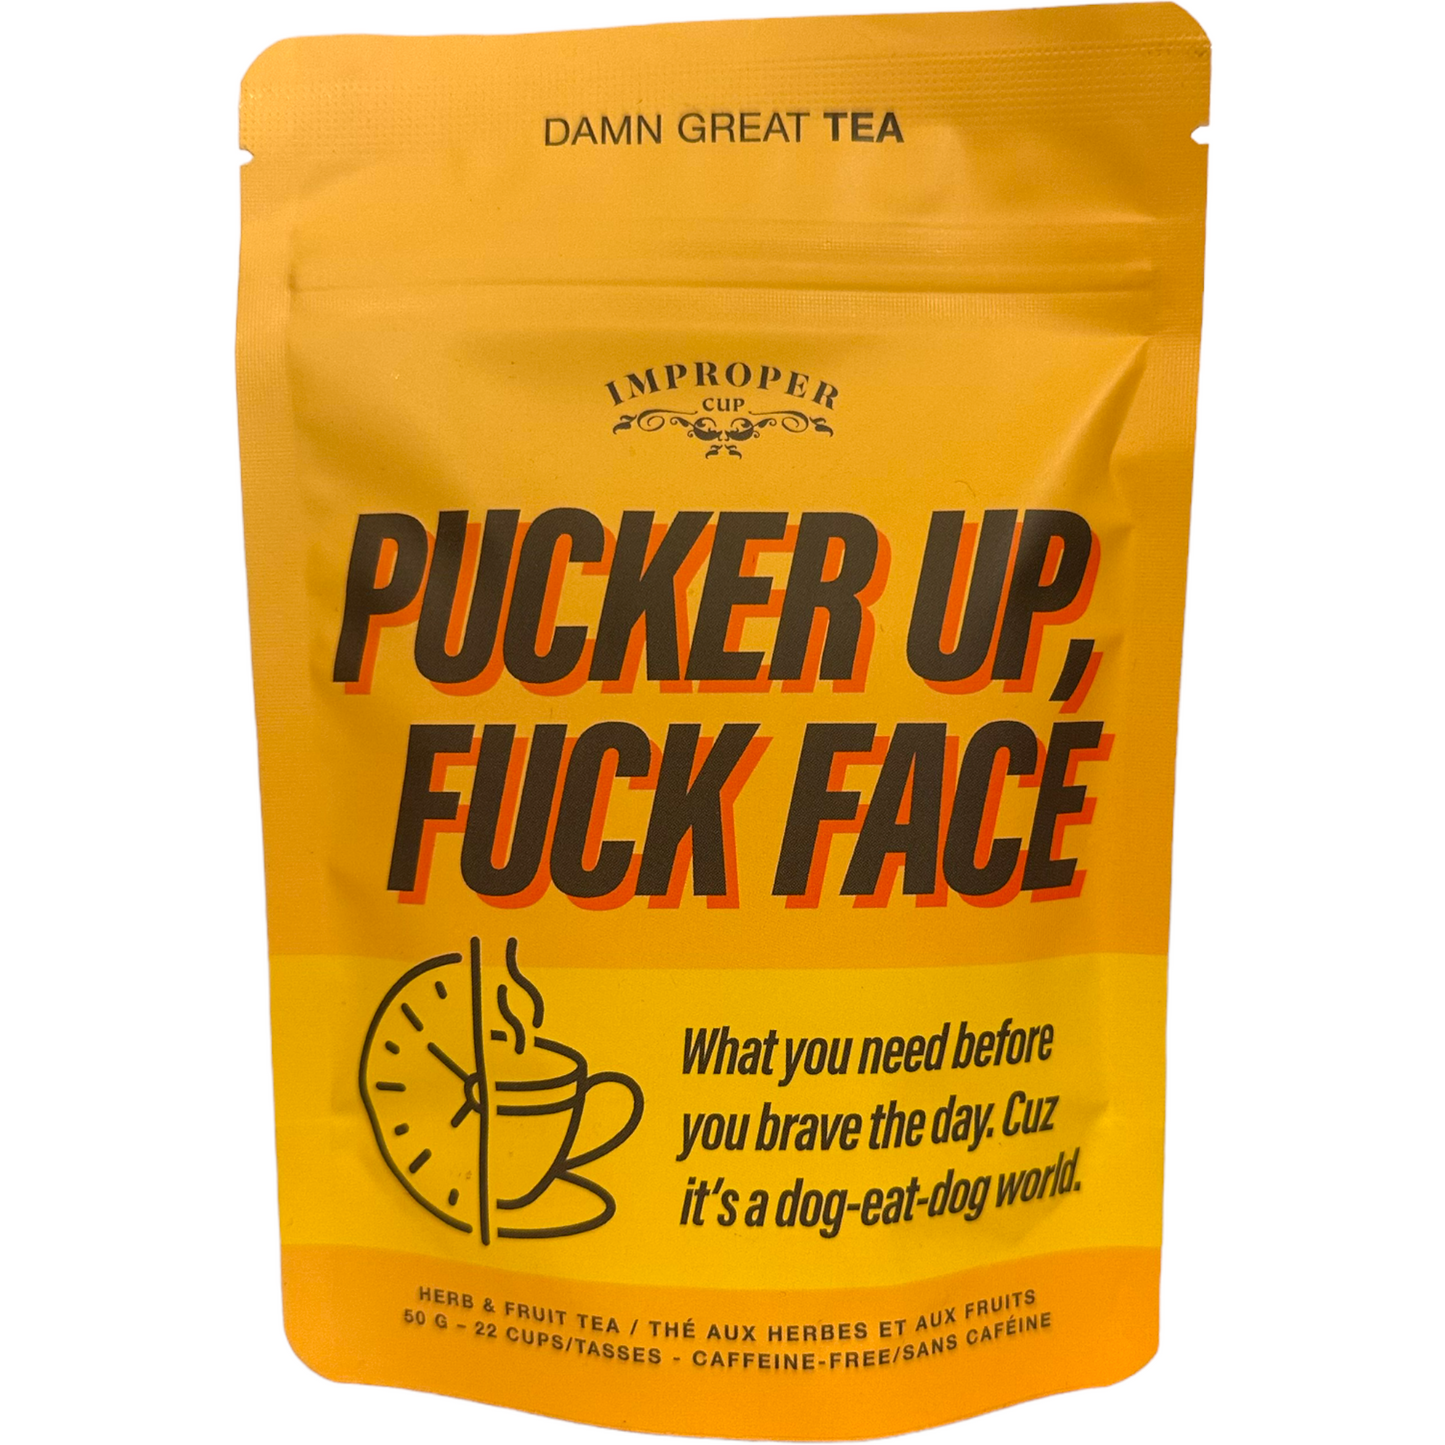 Improper Cup Pucker Up, F*ck Face Tea